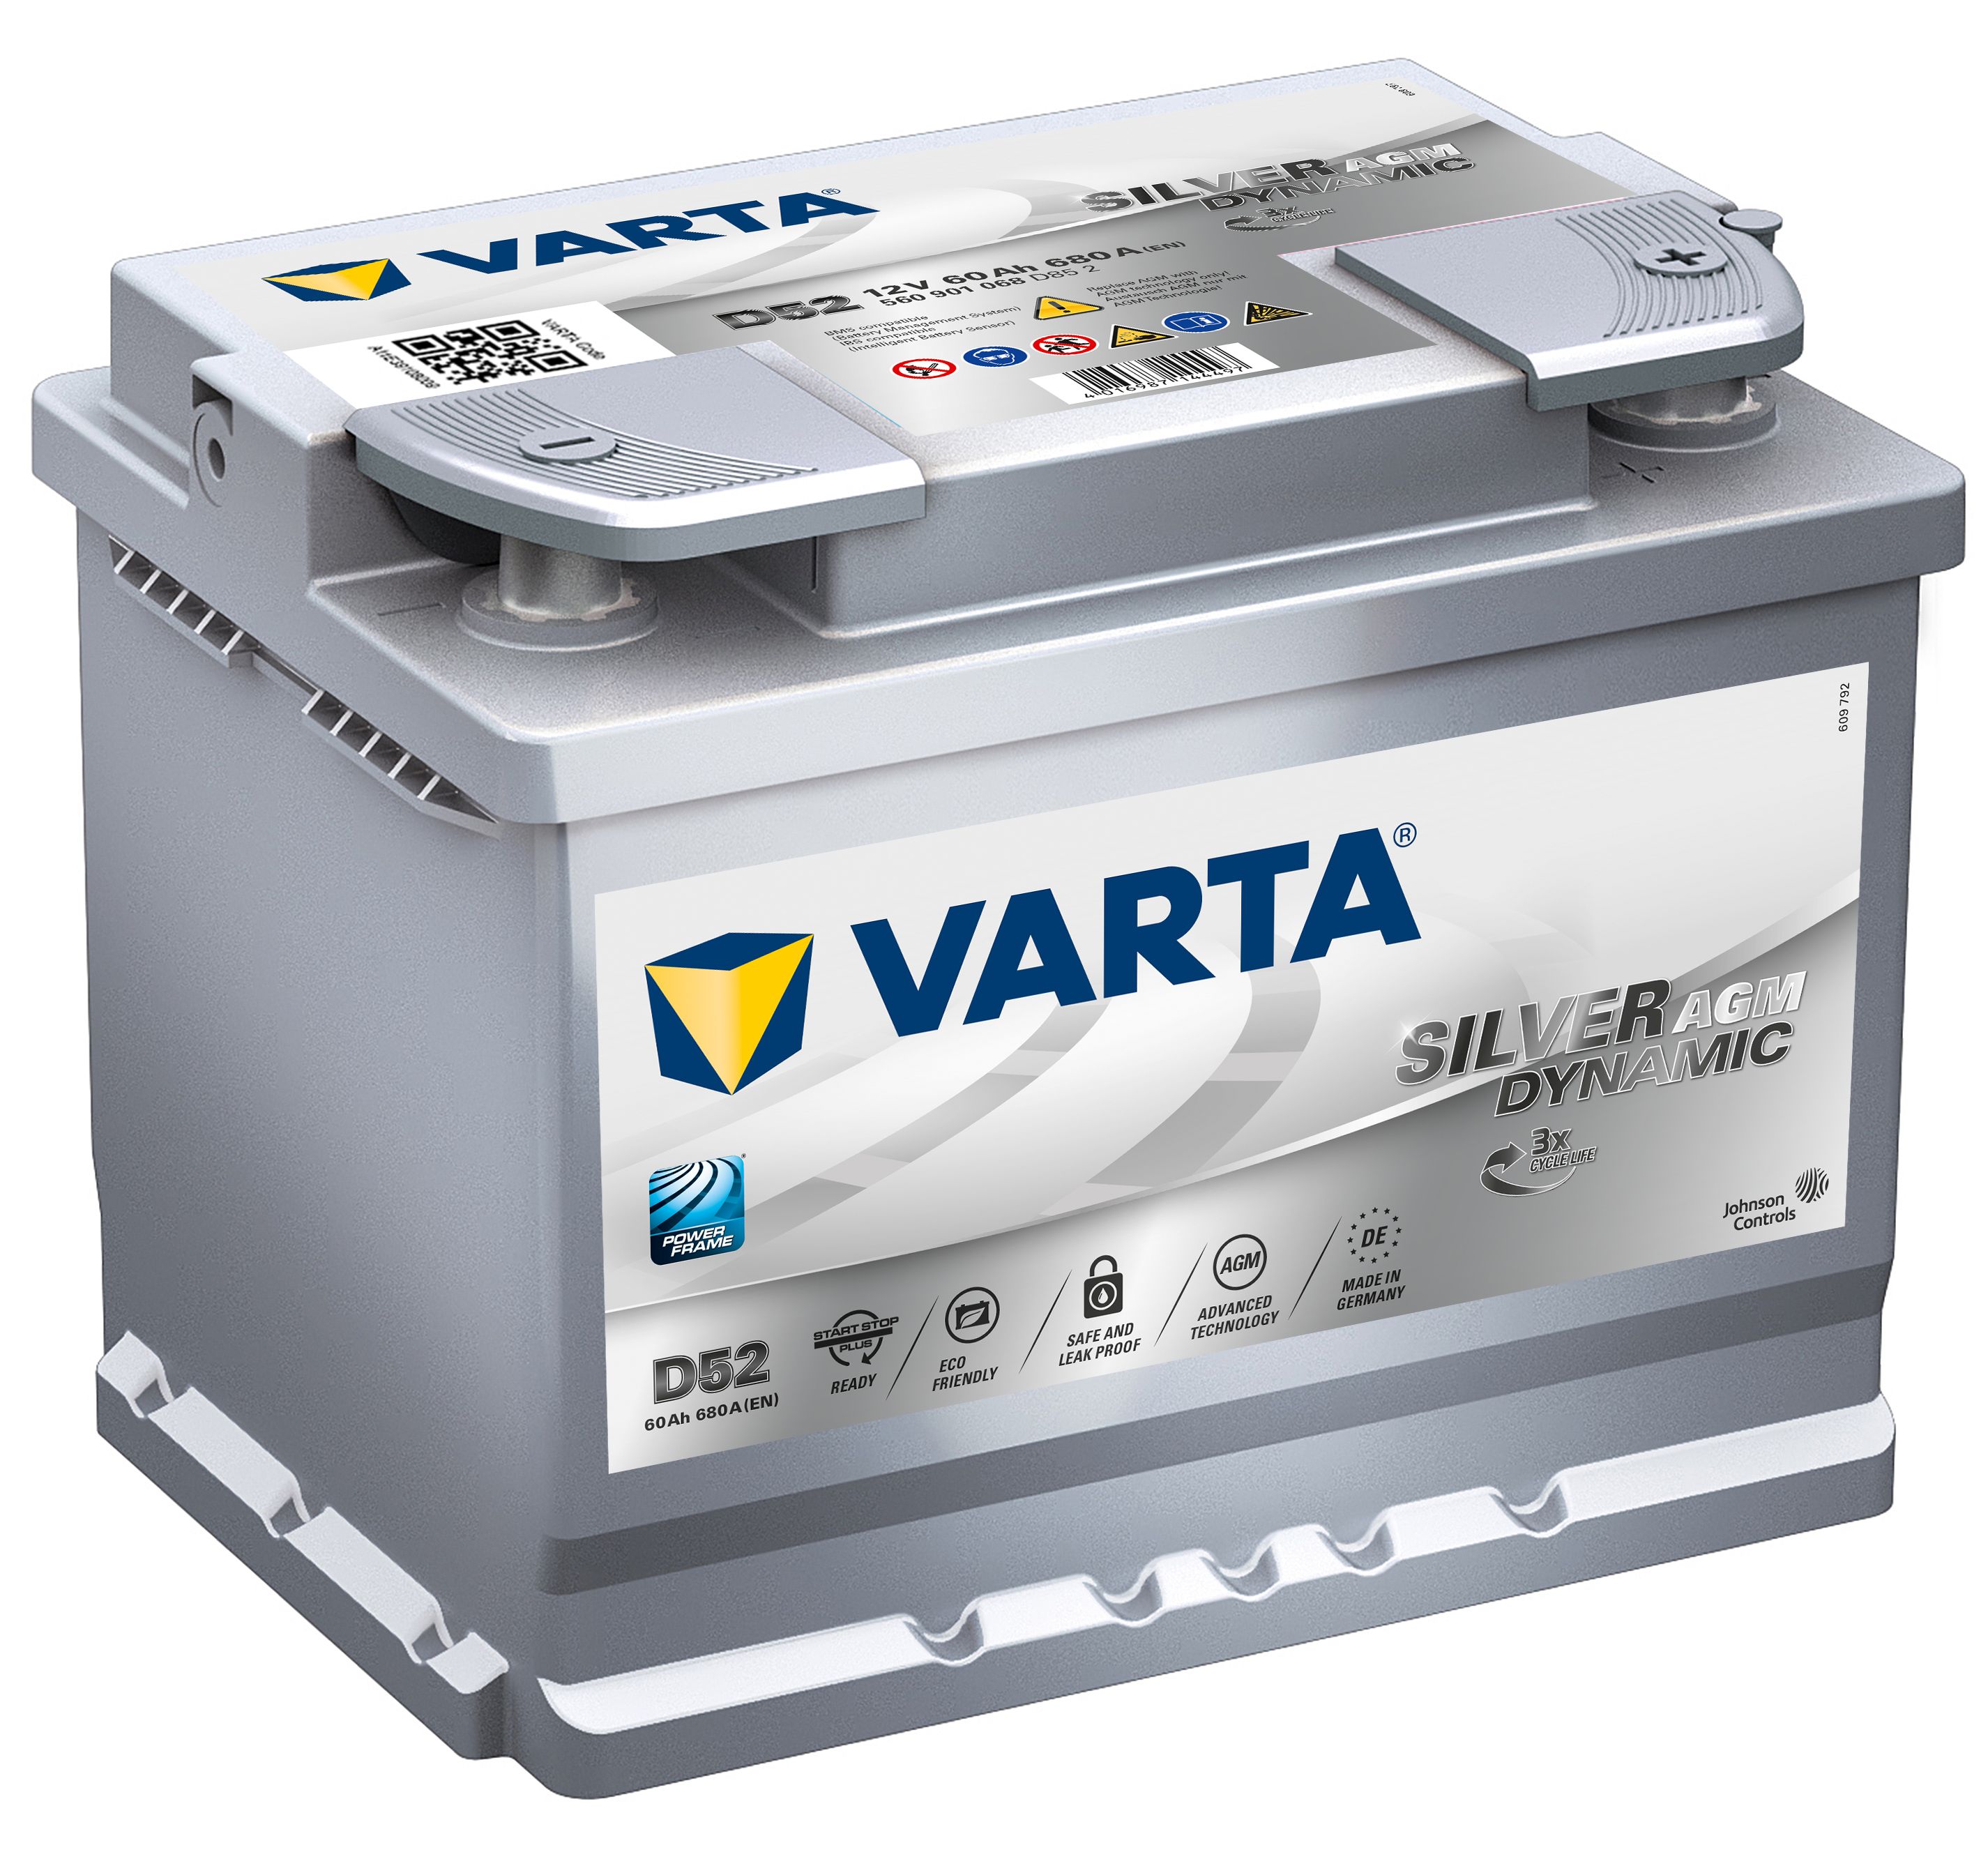 VARTA Varta Silver Dynamic AGM - 12v 60ah - autó akkumulátor - jobb+